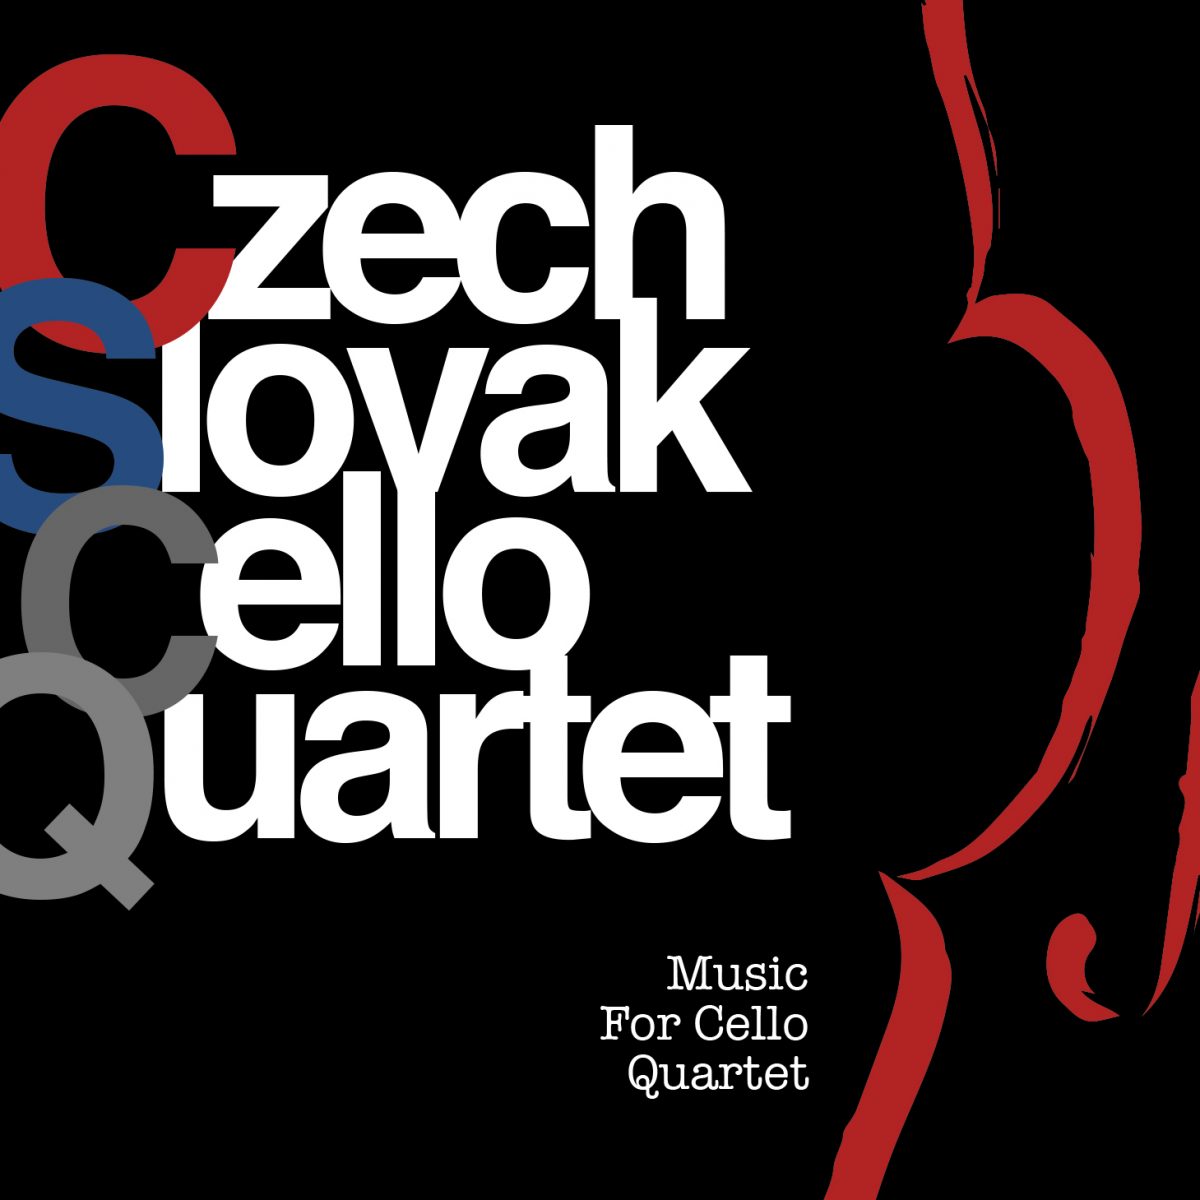 CD Shop - CZECH SLOVAK CELLO QUARTET MUSIC FOR CELLO QUARTET